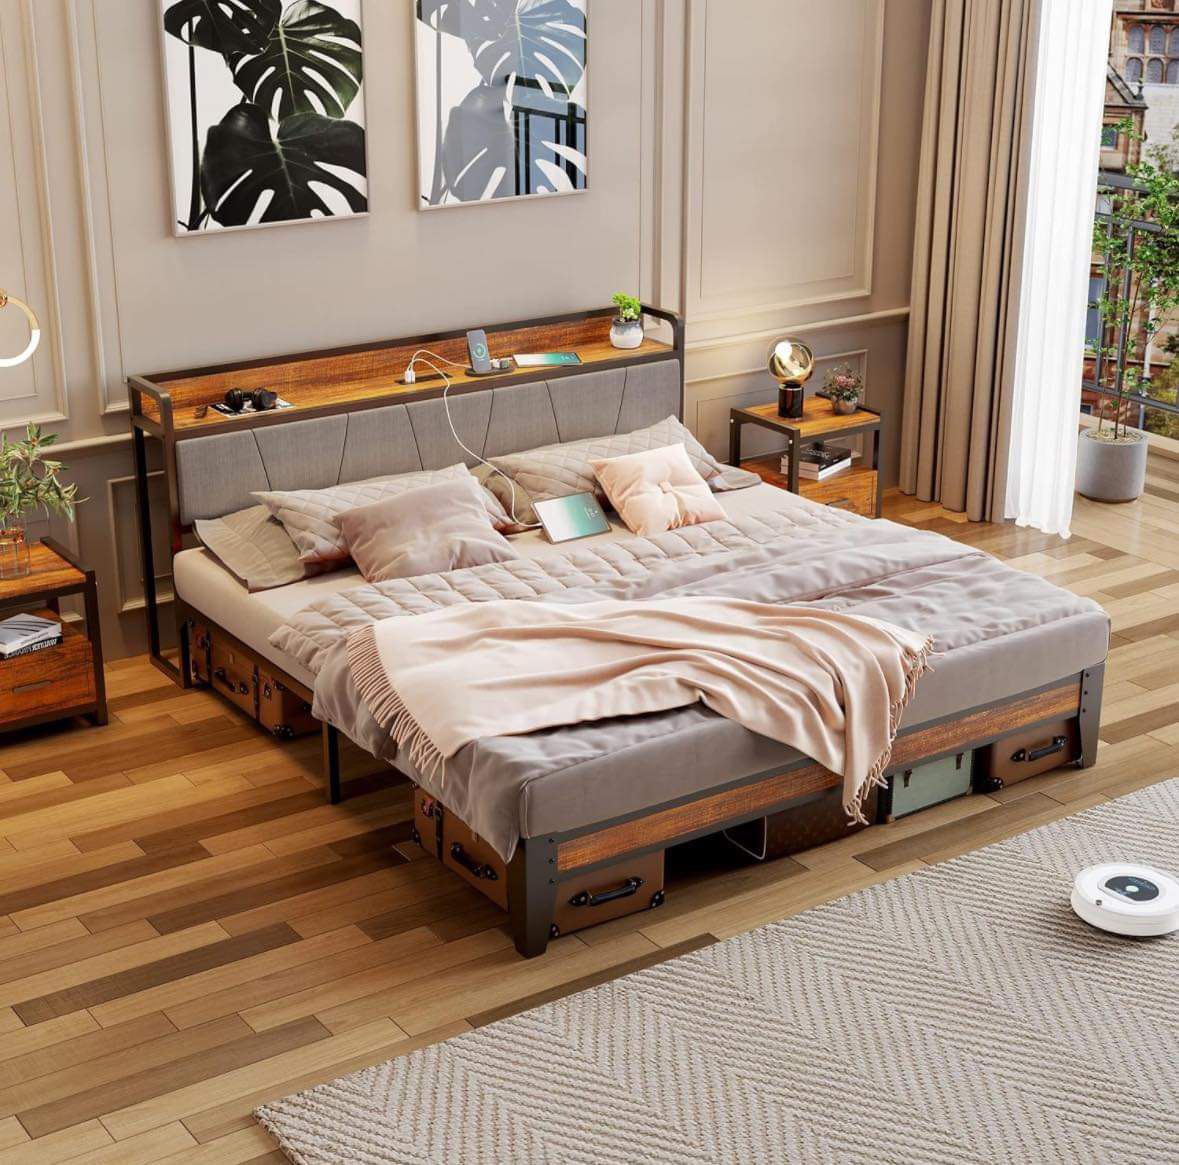 King Size Bed Frame Wood Adjustable Headboard with Charging Station, Wooden Slats Metal Platform Bed Frame with Storage